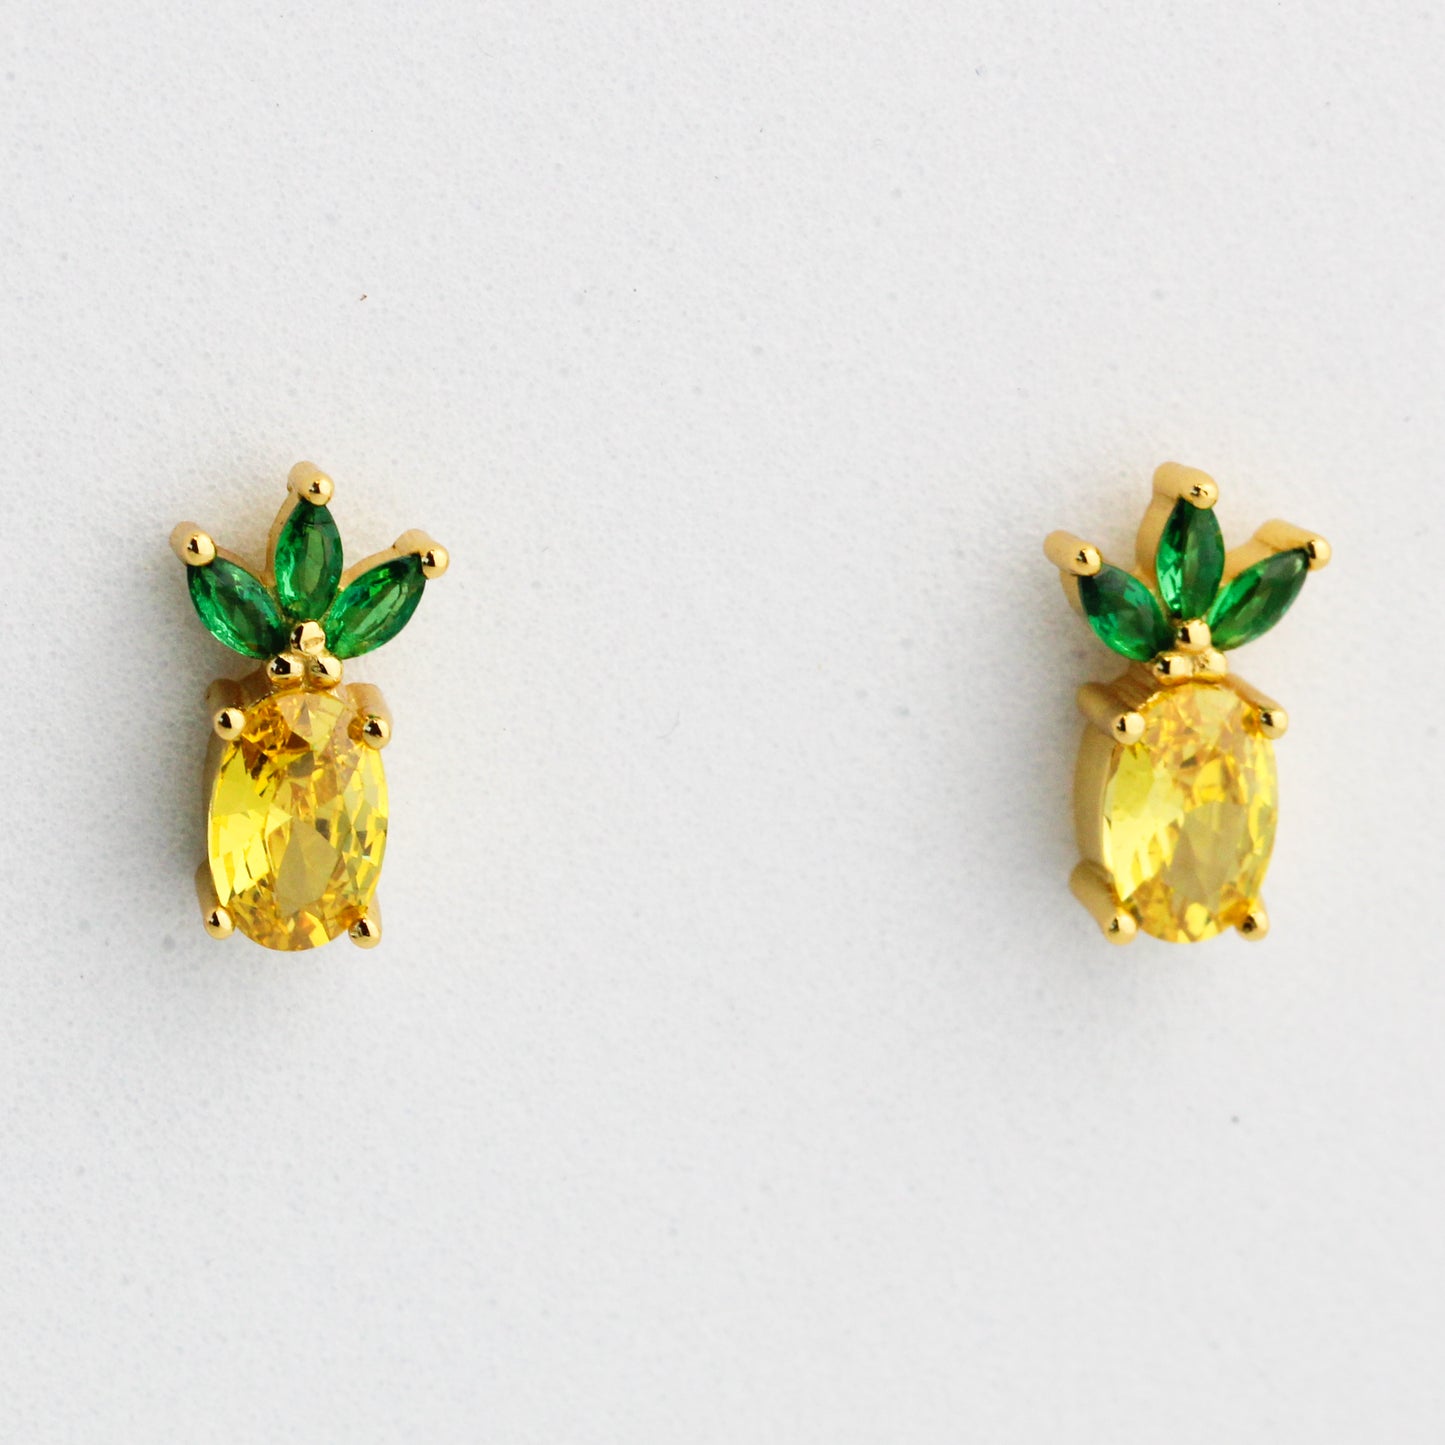 Crystal Pineapple Stud Earrings